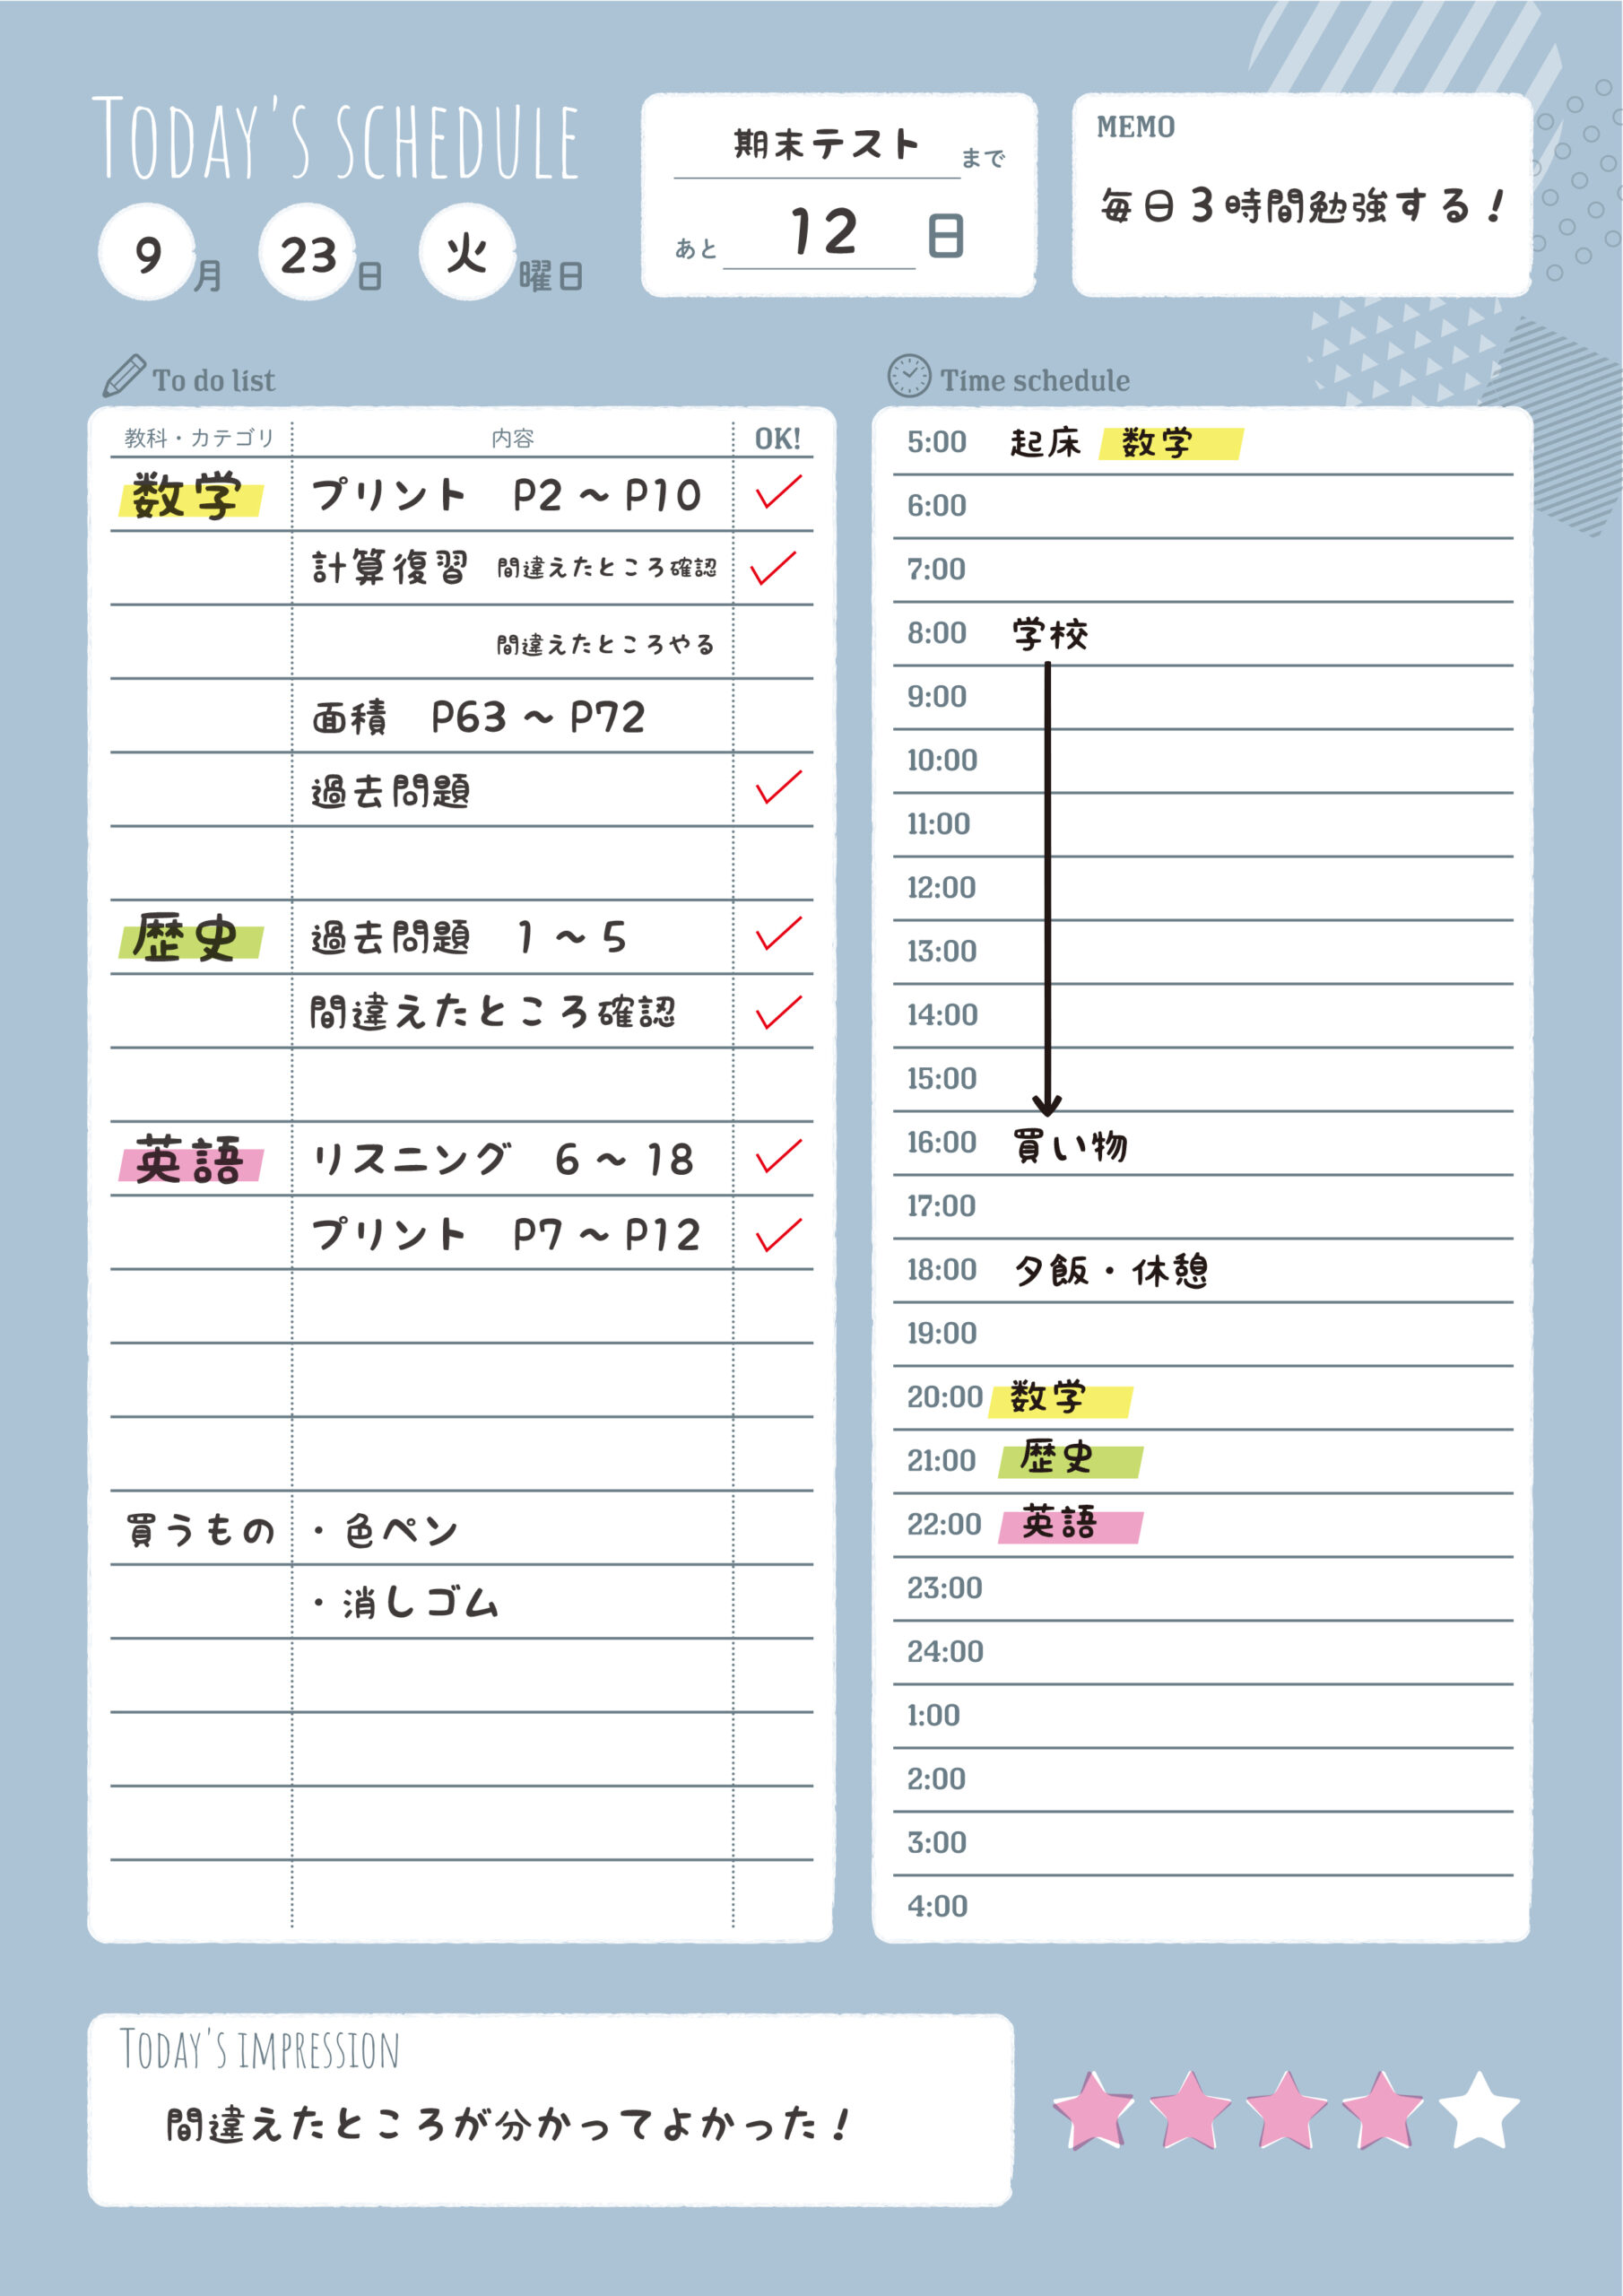 中学高校生 学習計画表(月間・週間・1日)可愛い・おしゃれ | 無料ダウンロード印刷